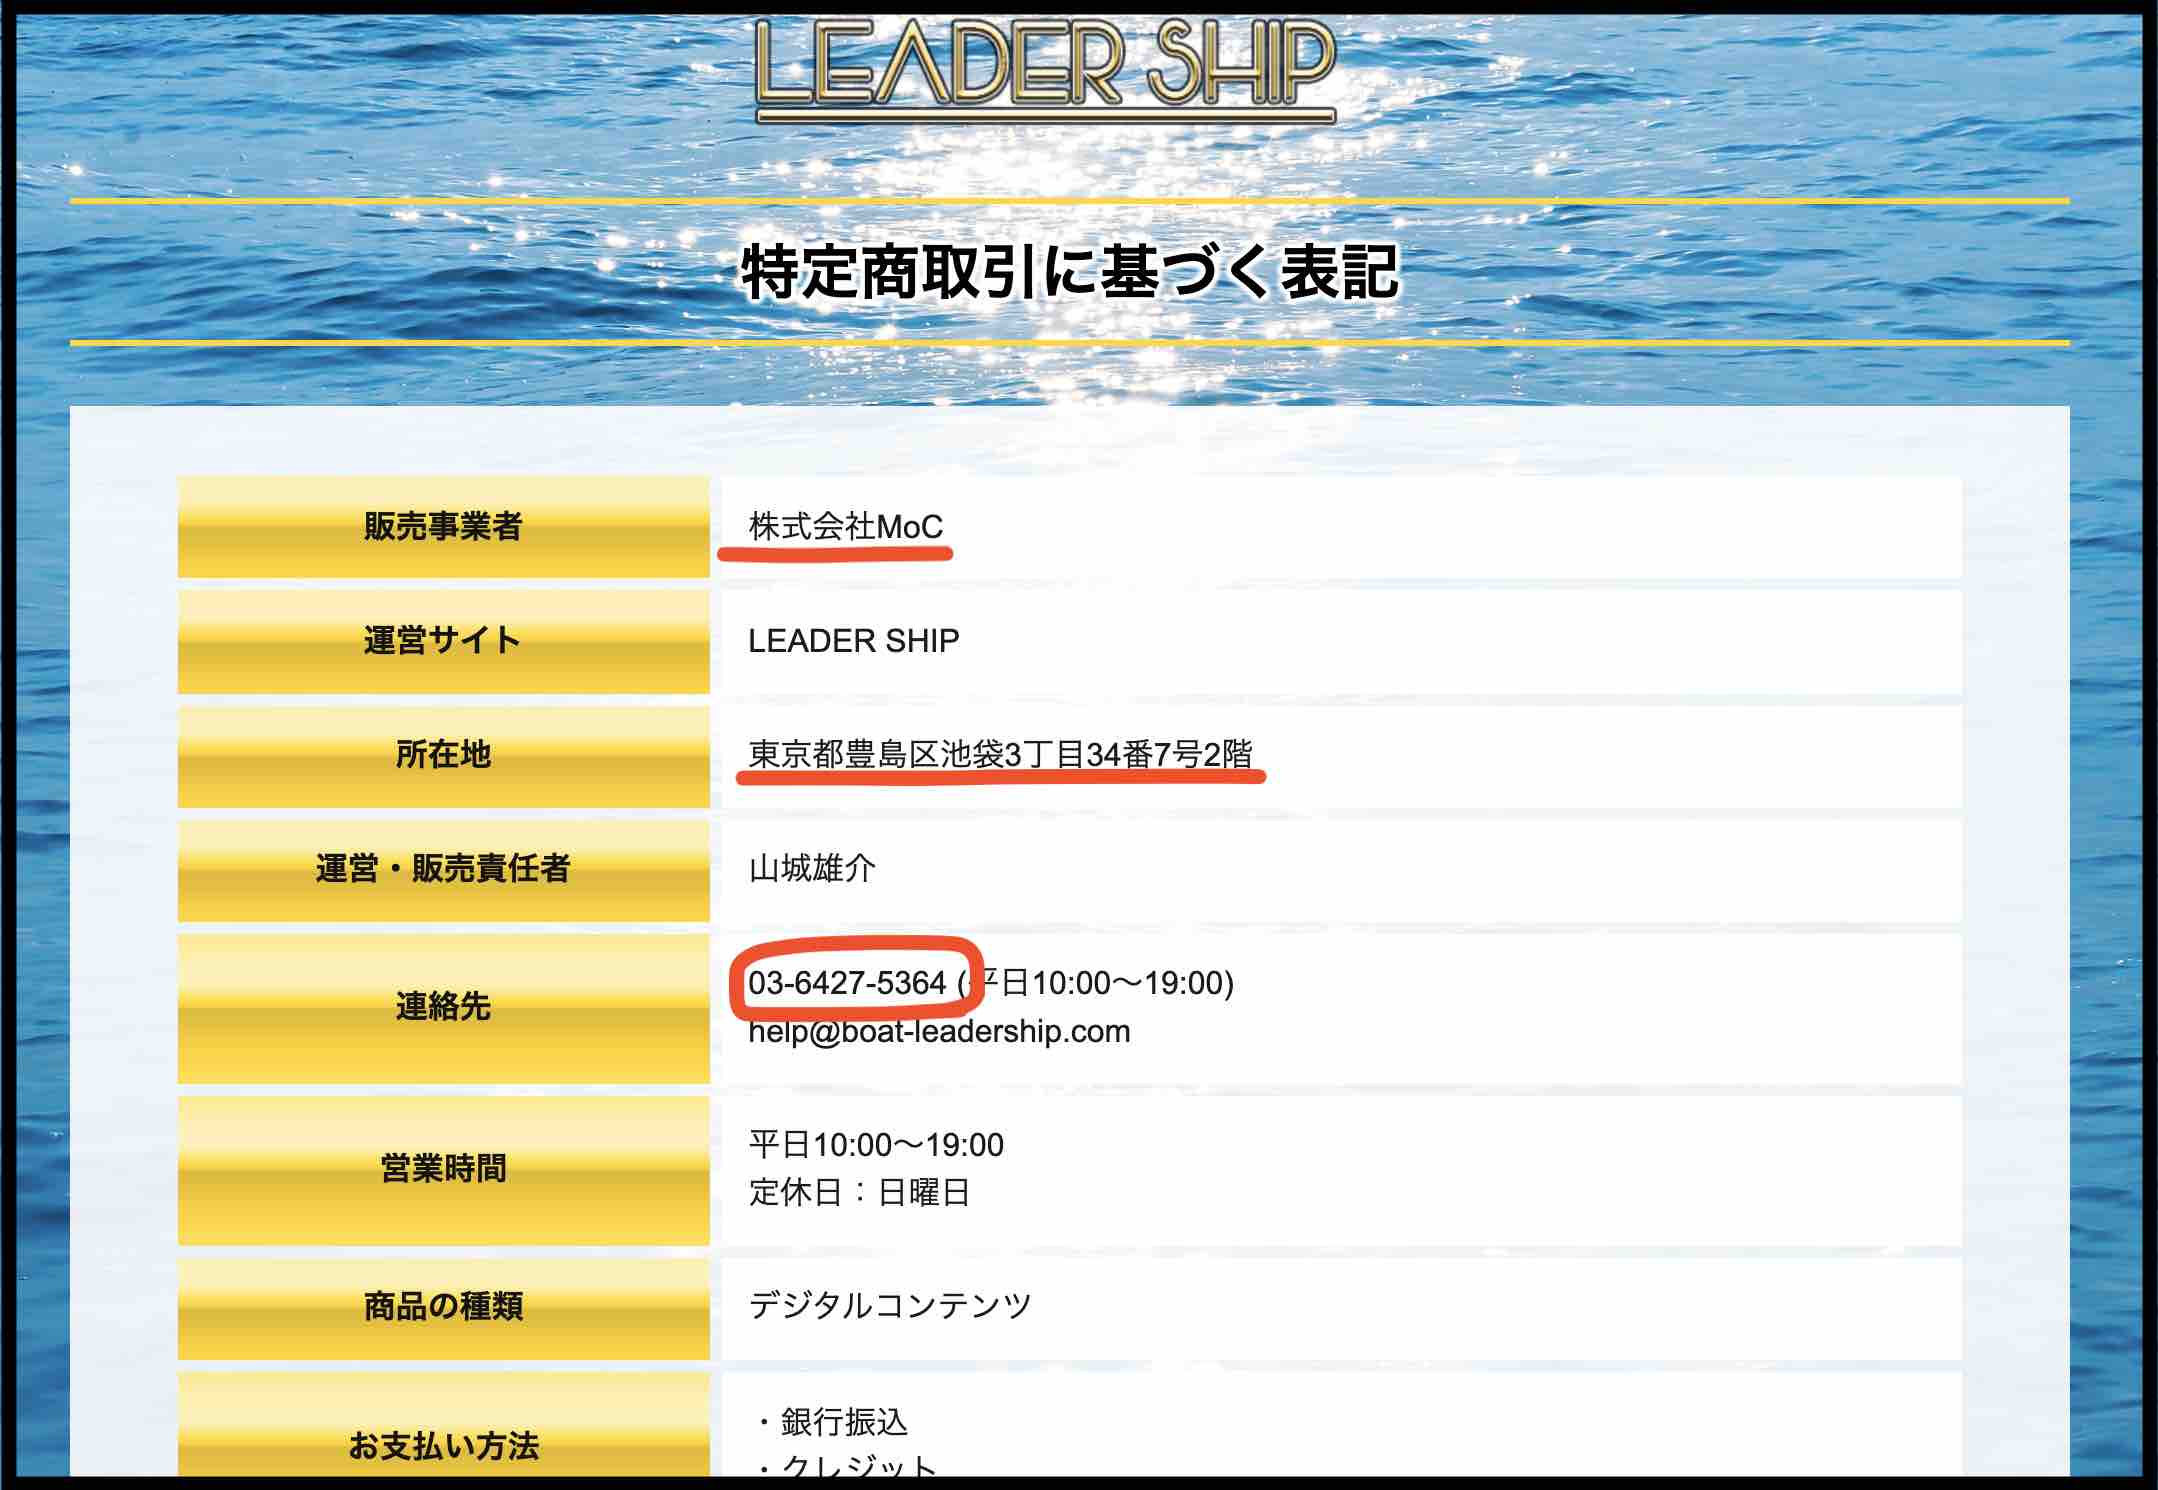 リーダーシップ(LEADERSHIP)という競艇予想サイトのの運営会社情報